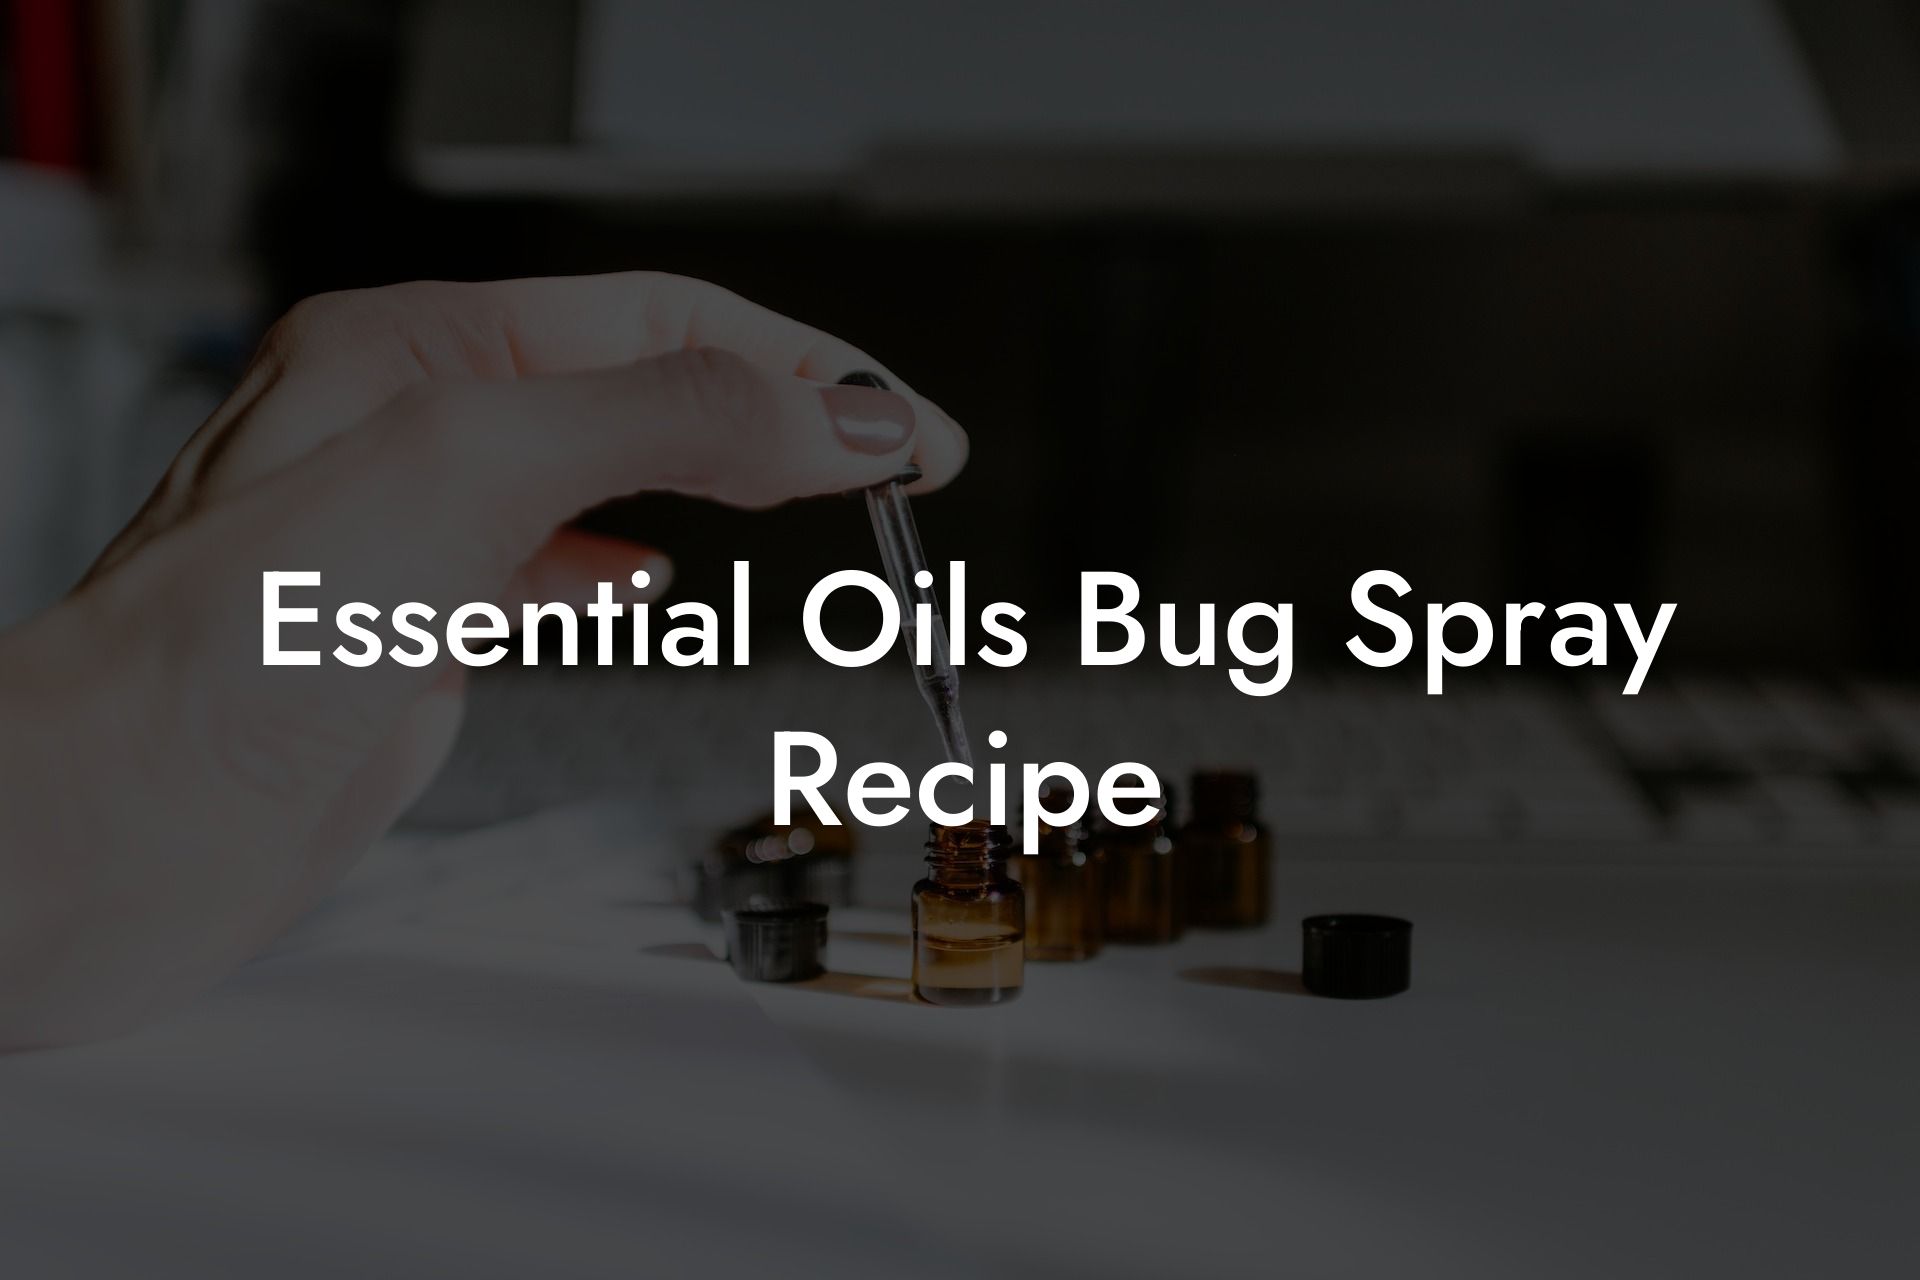 Essential Oils Bug Spray Recipe